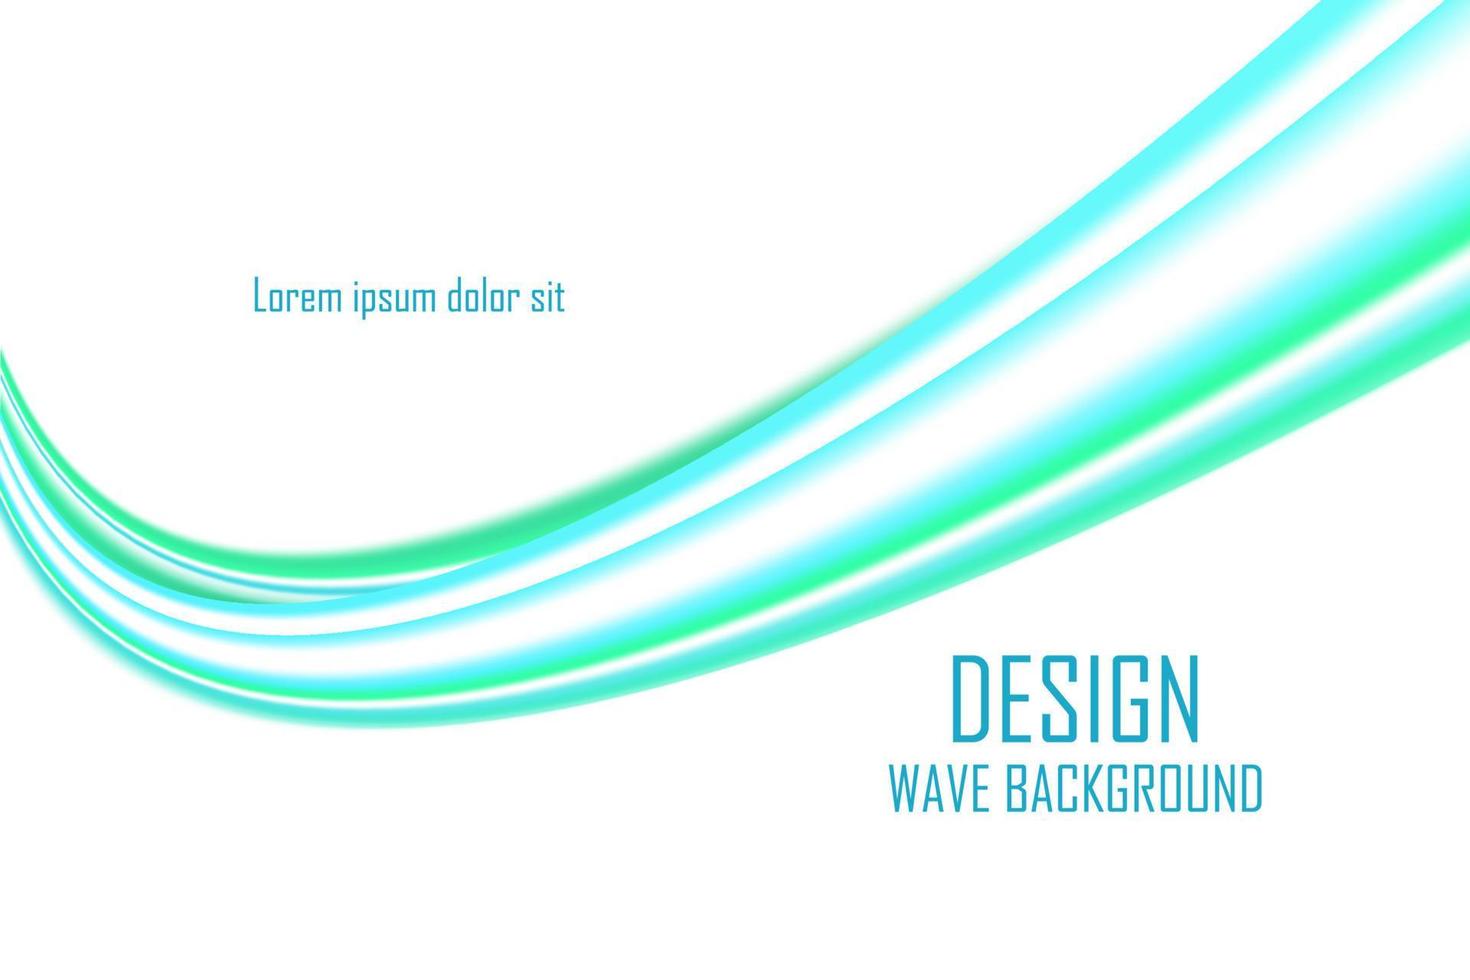 abstrakte blaue Wellenhintergrund-Designvorlage für Flyer, Website und Banner vektor